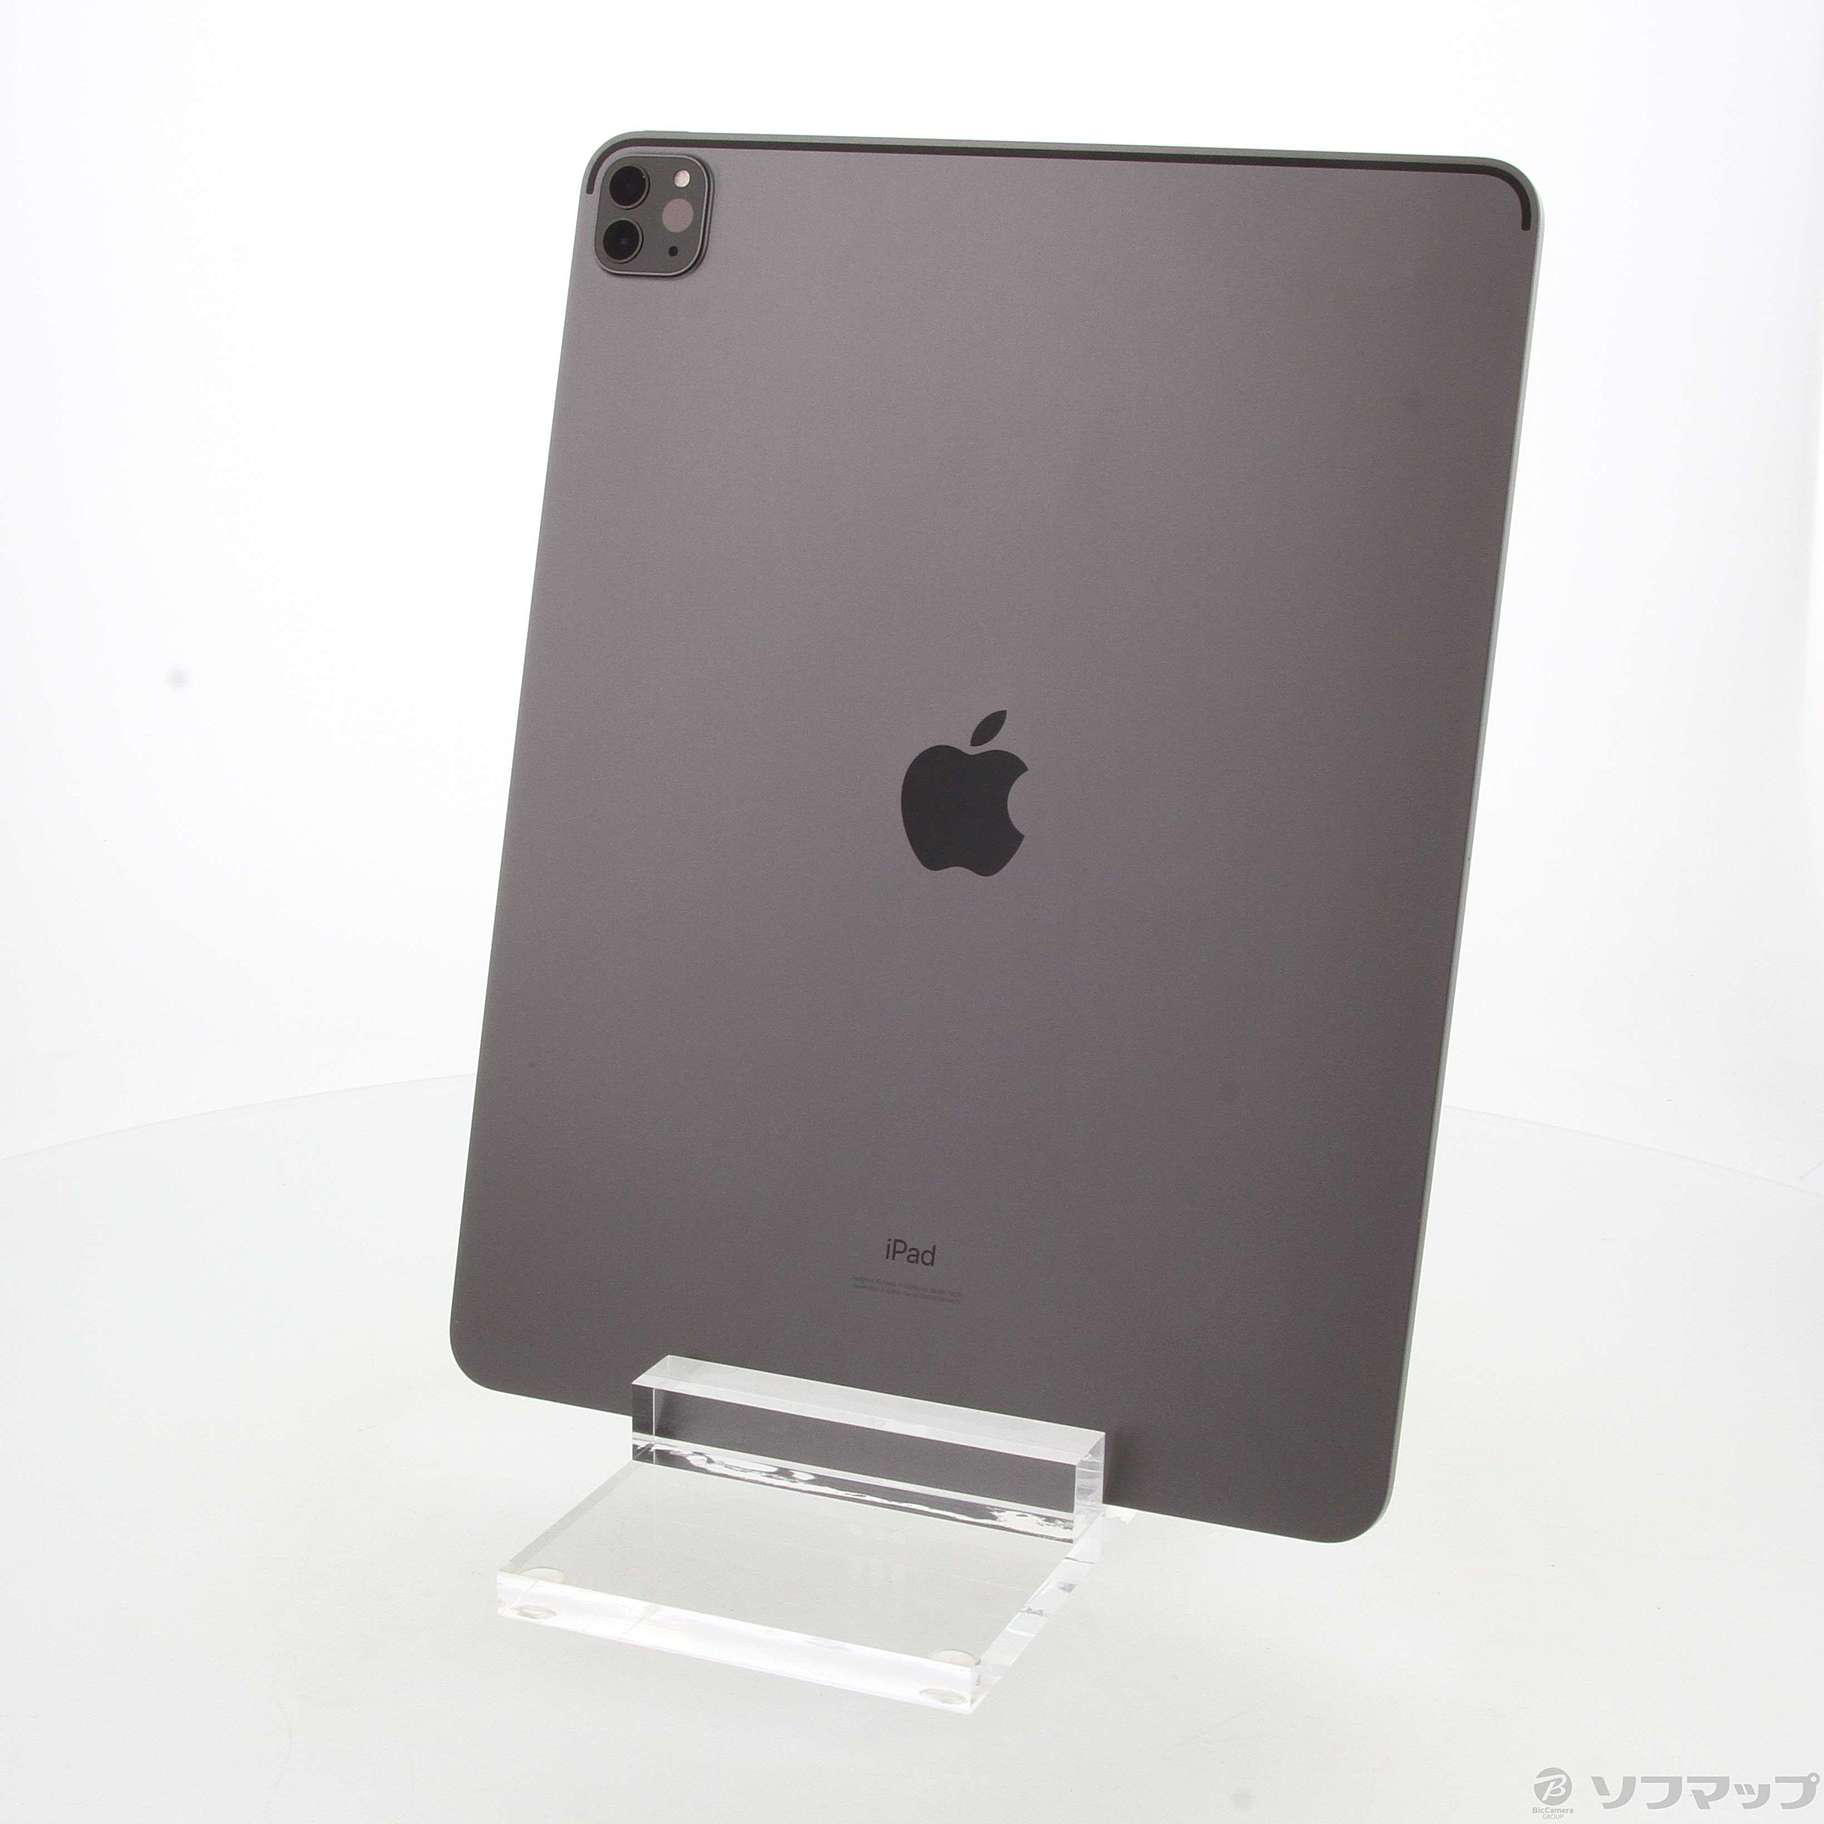 人気メーカー・ブランド Pro iPad (第4世代) スペースグレイ 1TB 12.9インチ タブレット